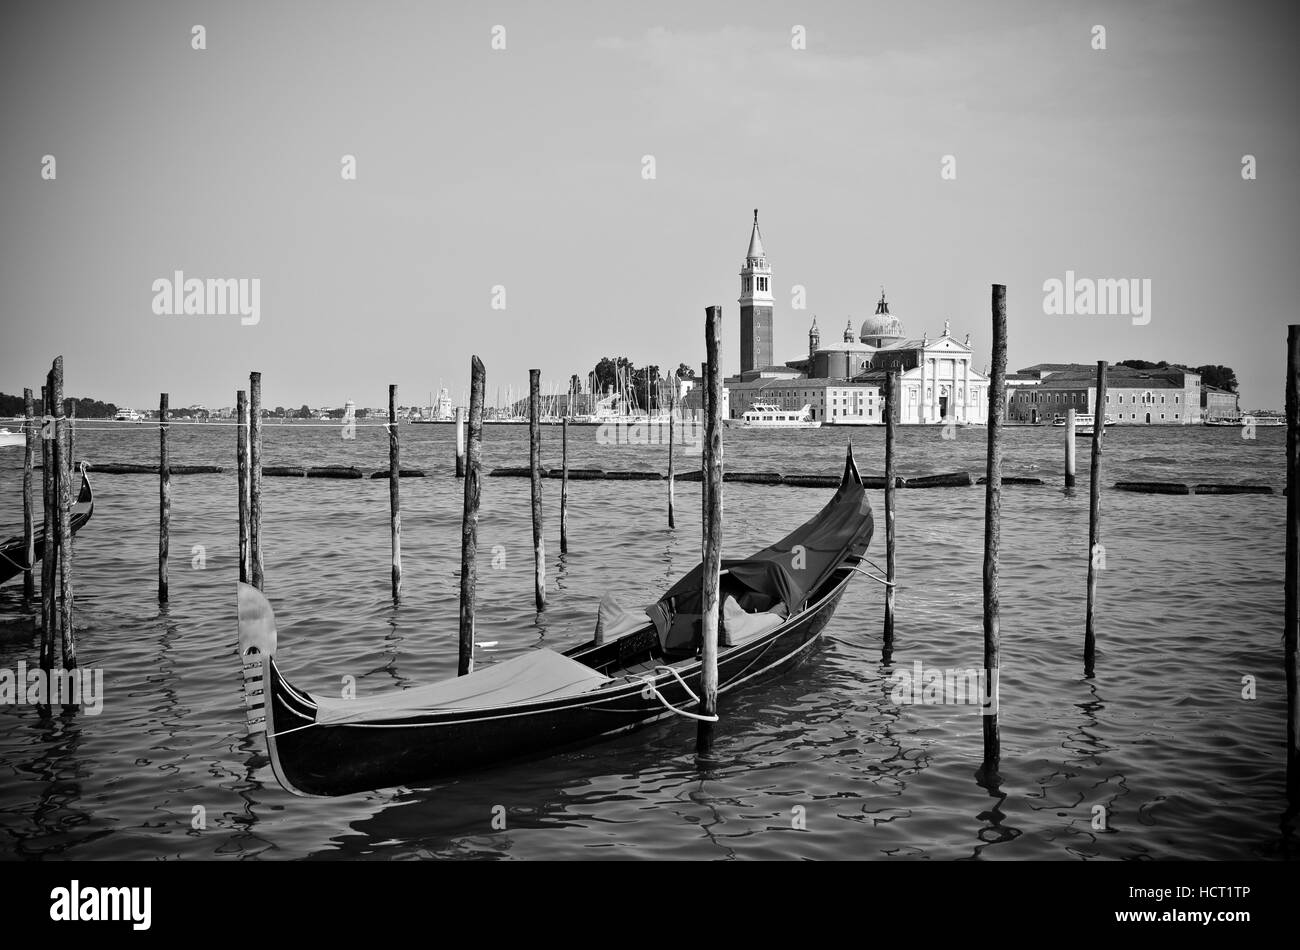 Gondola on Canal Grande with San Giorgio Maggiore church in the background, Venice, Italy Stock Photo